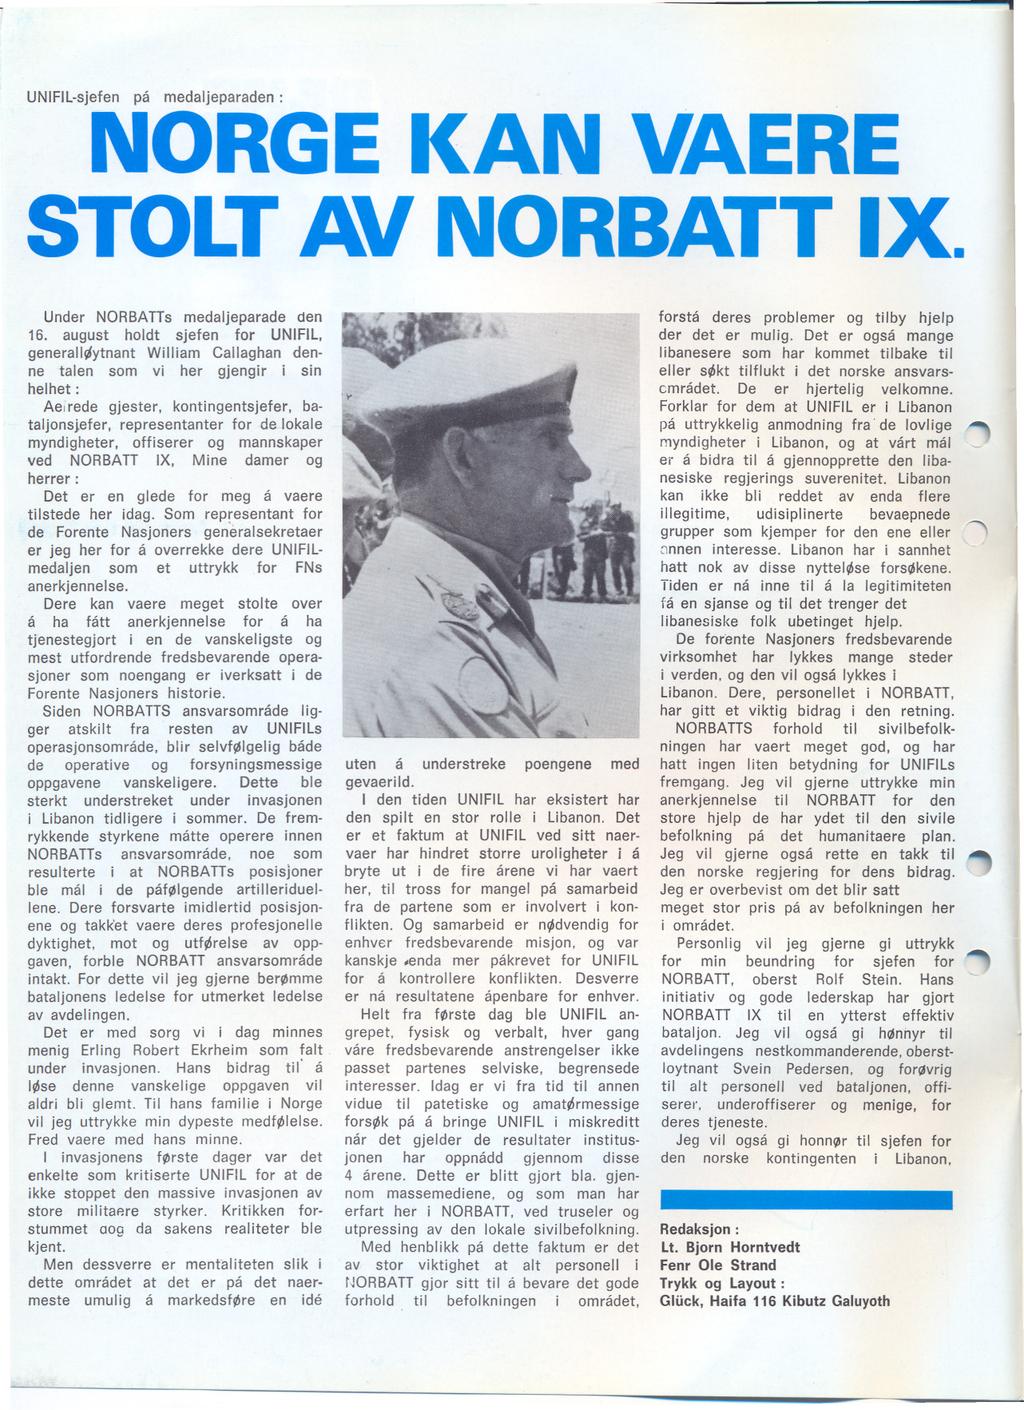 UNIFil-sjefen på medaljeparaden : NORGE KAN VAERE STOLT AV NORBATT IX. Under NORBATTs medaljeparade den 16.